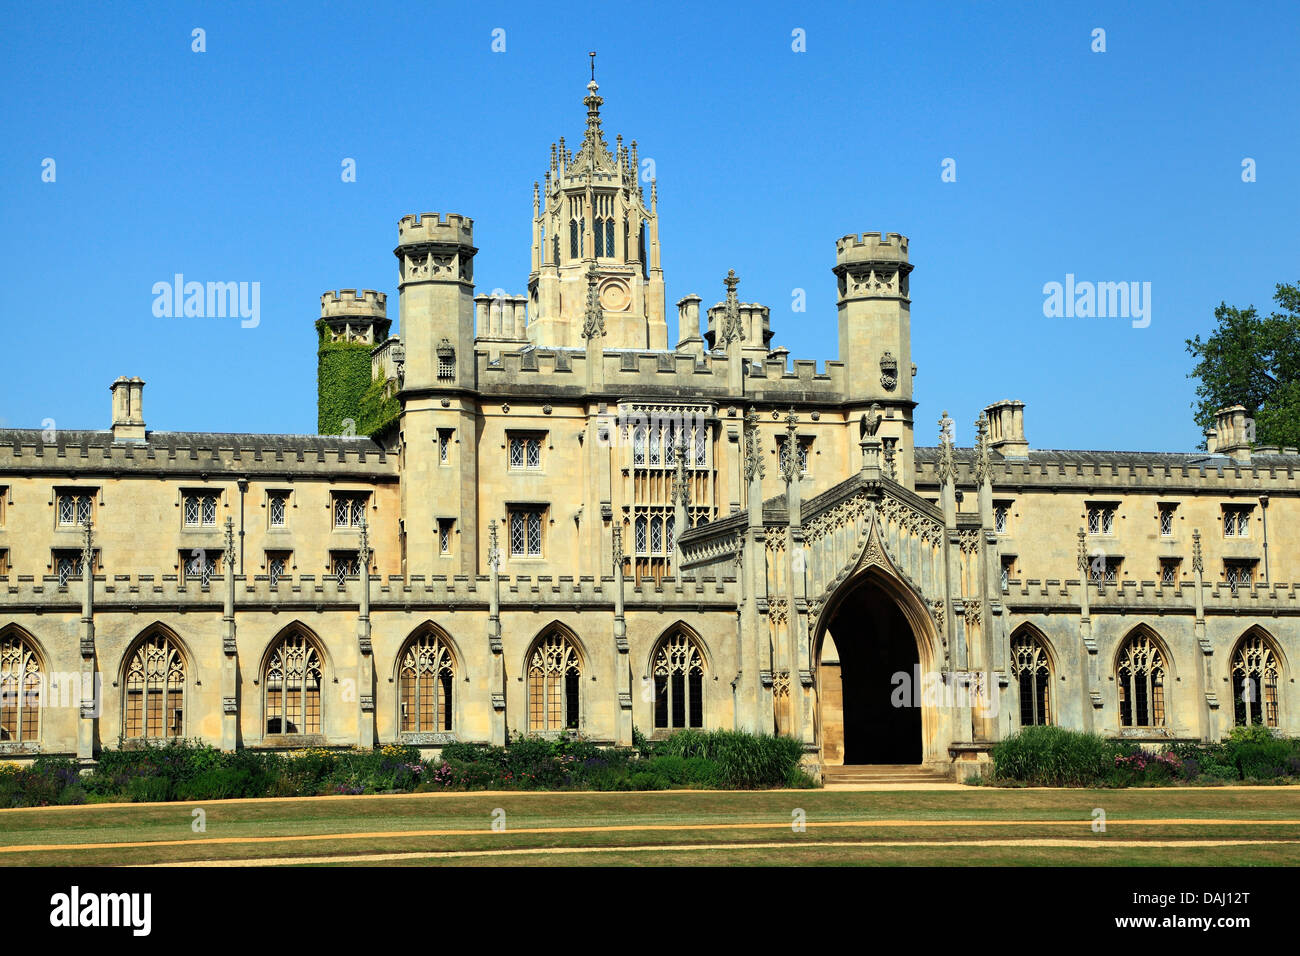 Saint John's College, Cambridge, Angleterre, Royaume-Uni Université universités collèges anglais Banque D'Images